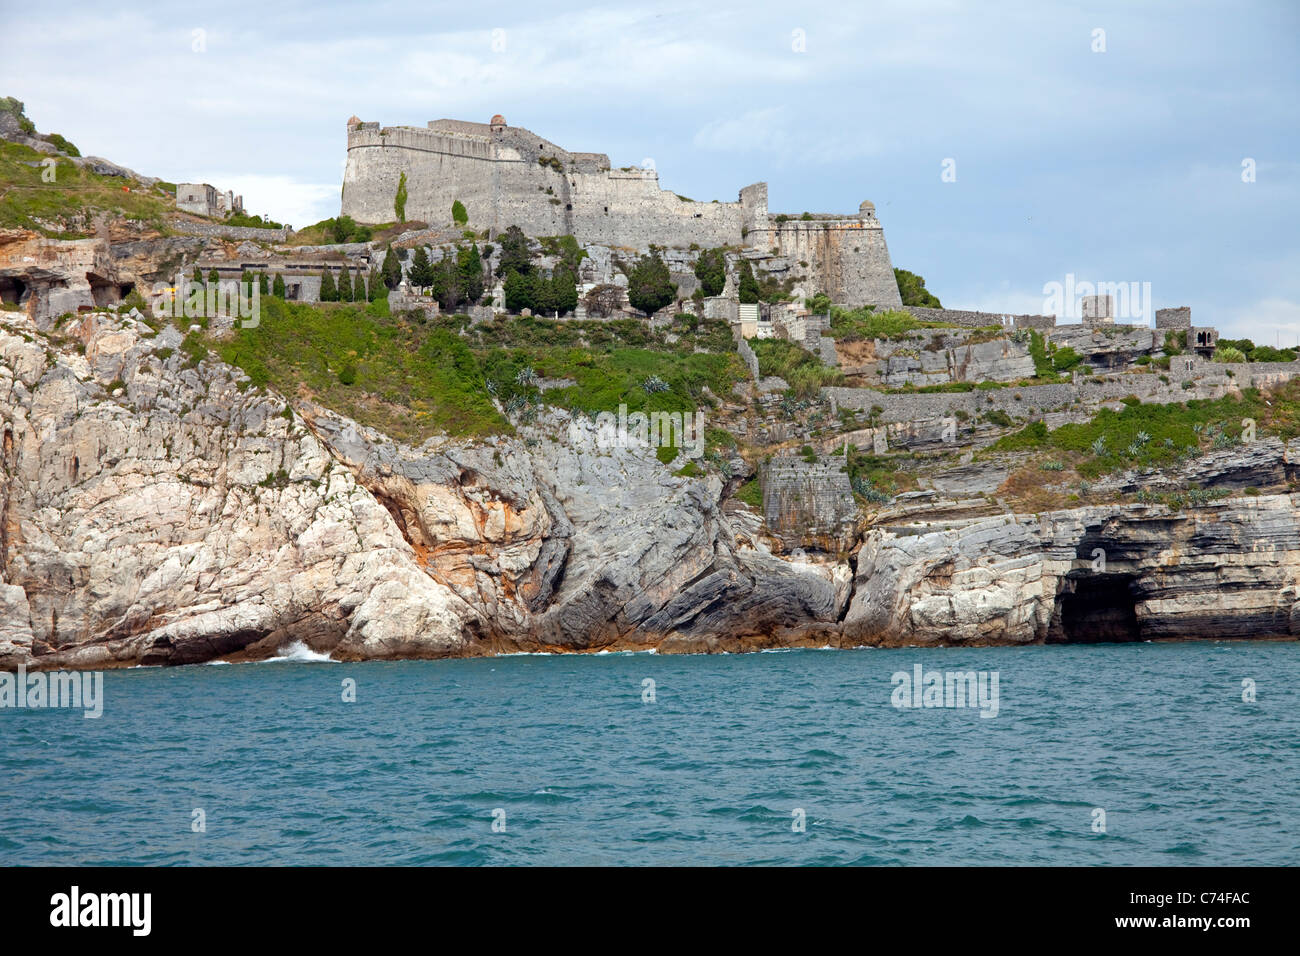 Castello Doria, fortress at fishing village Porto Venere, province La Spezia, Liguria di Levante, Italy, Mediterranean sea, Europe Stock Photo